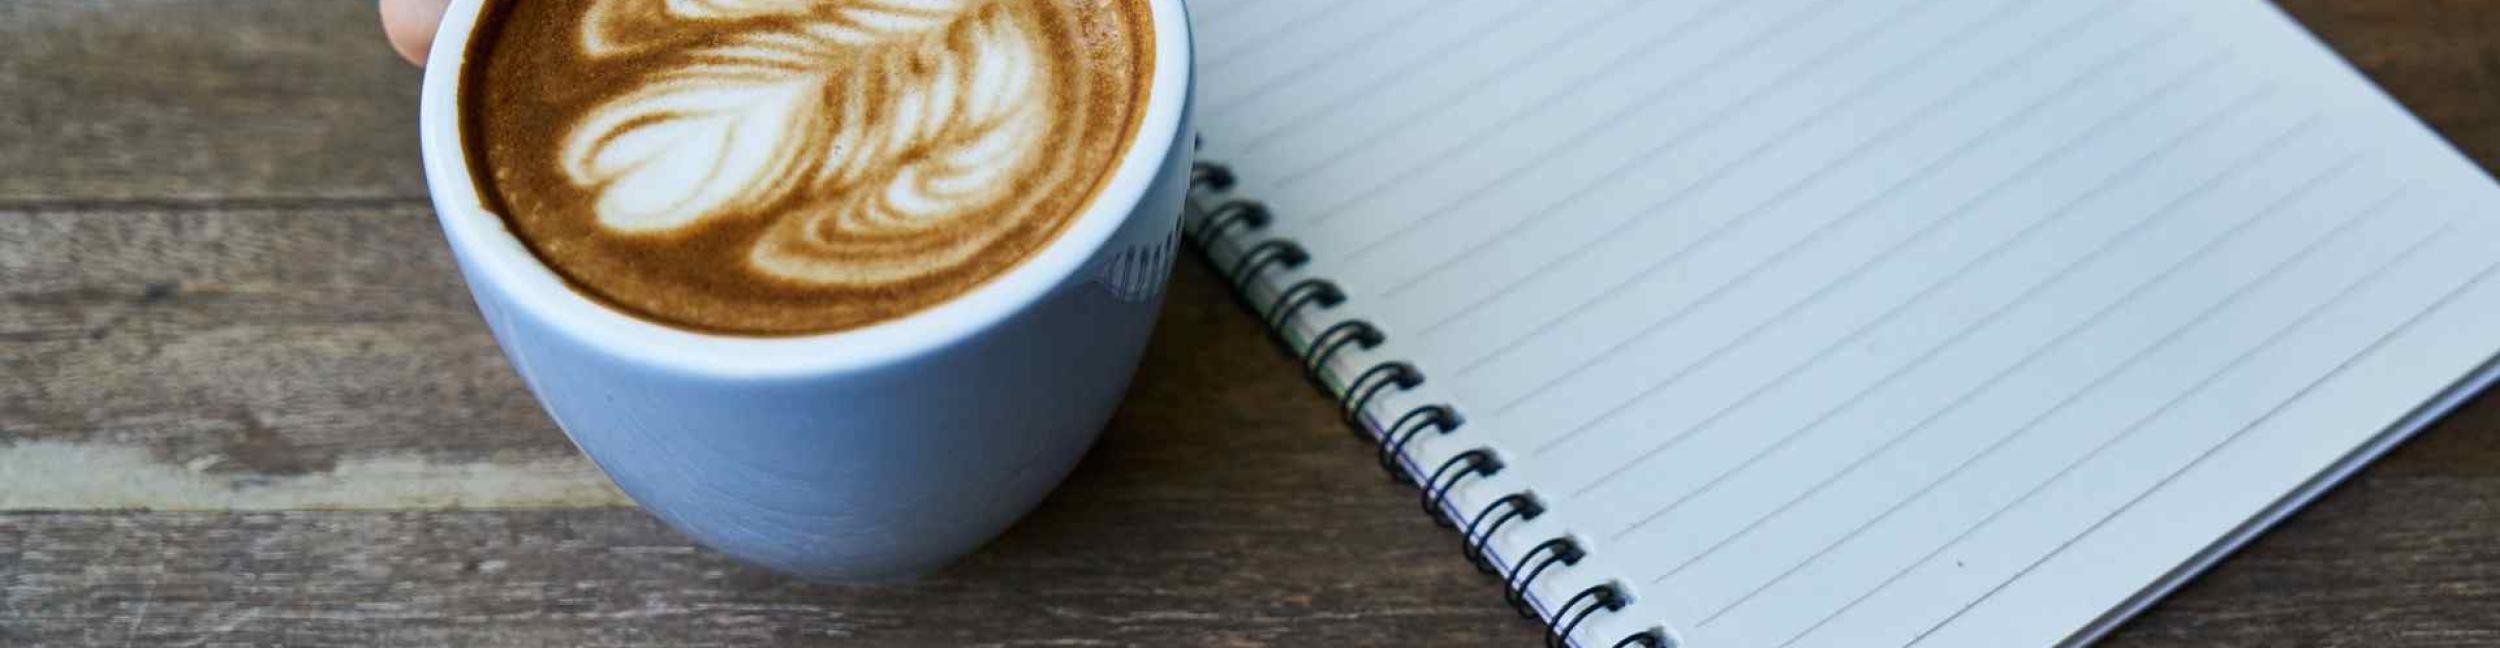 Eine Tasse mit Kaffee und ein Schreibblock mit Linien auf einem Holztisch, eine Hand hält die Tasse am Henkel fest